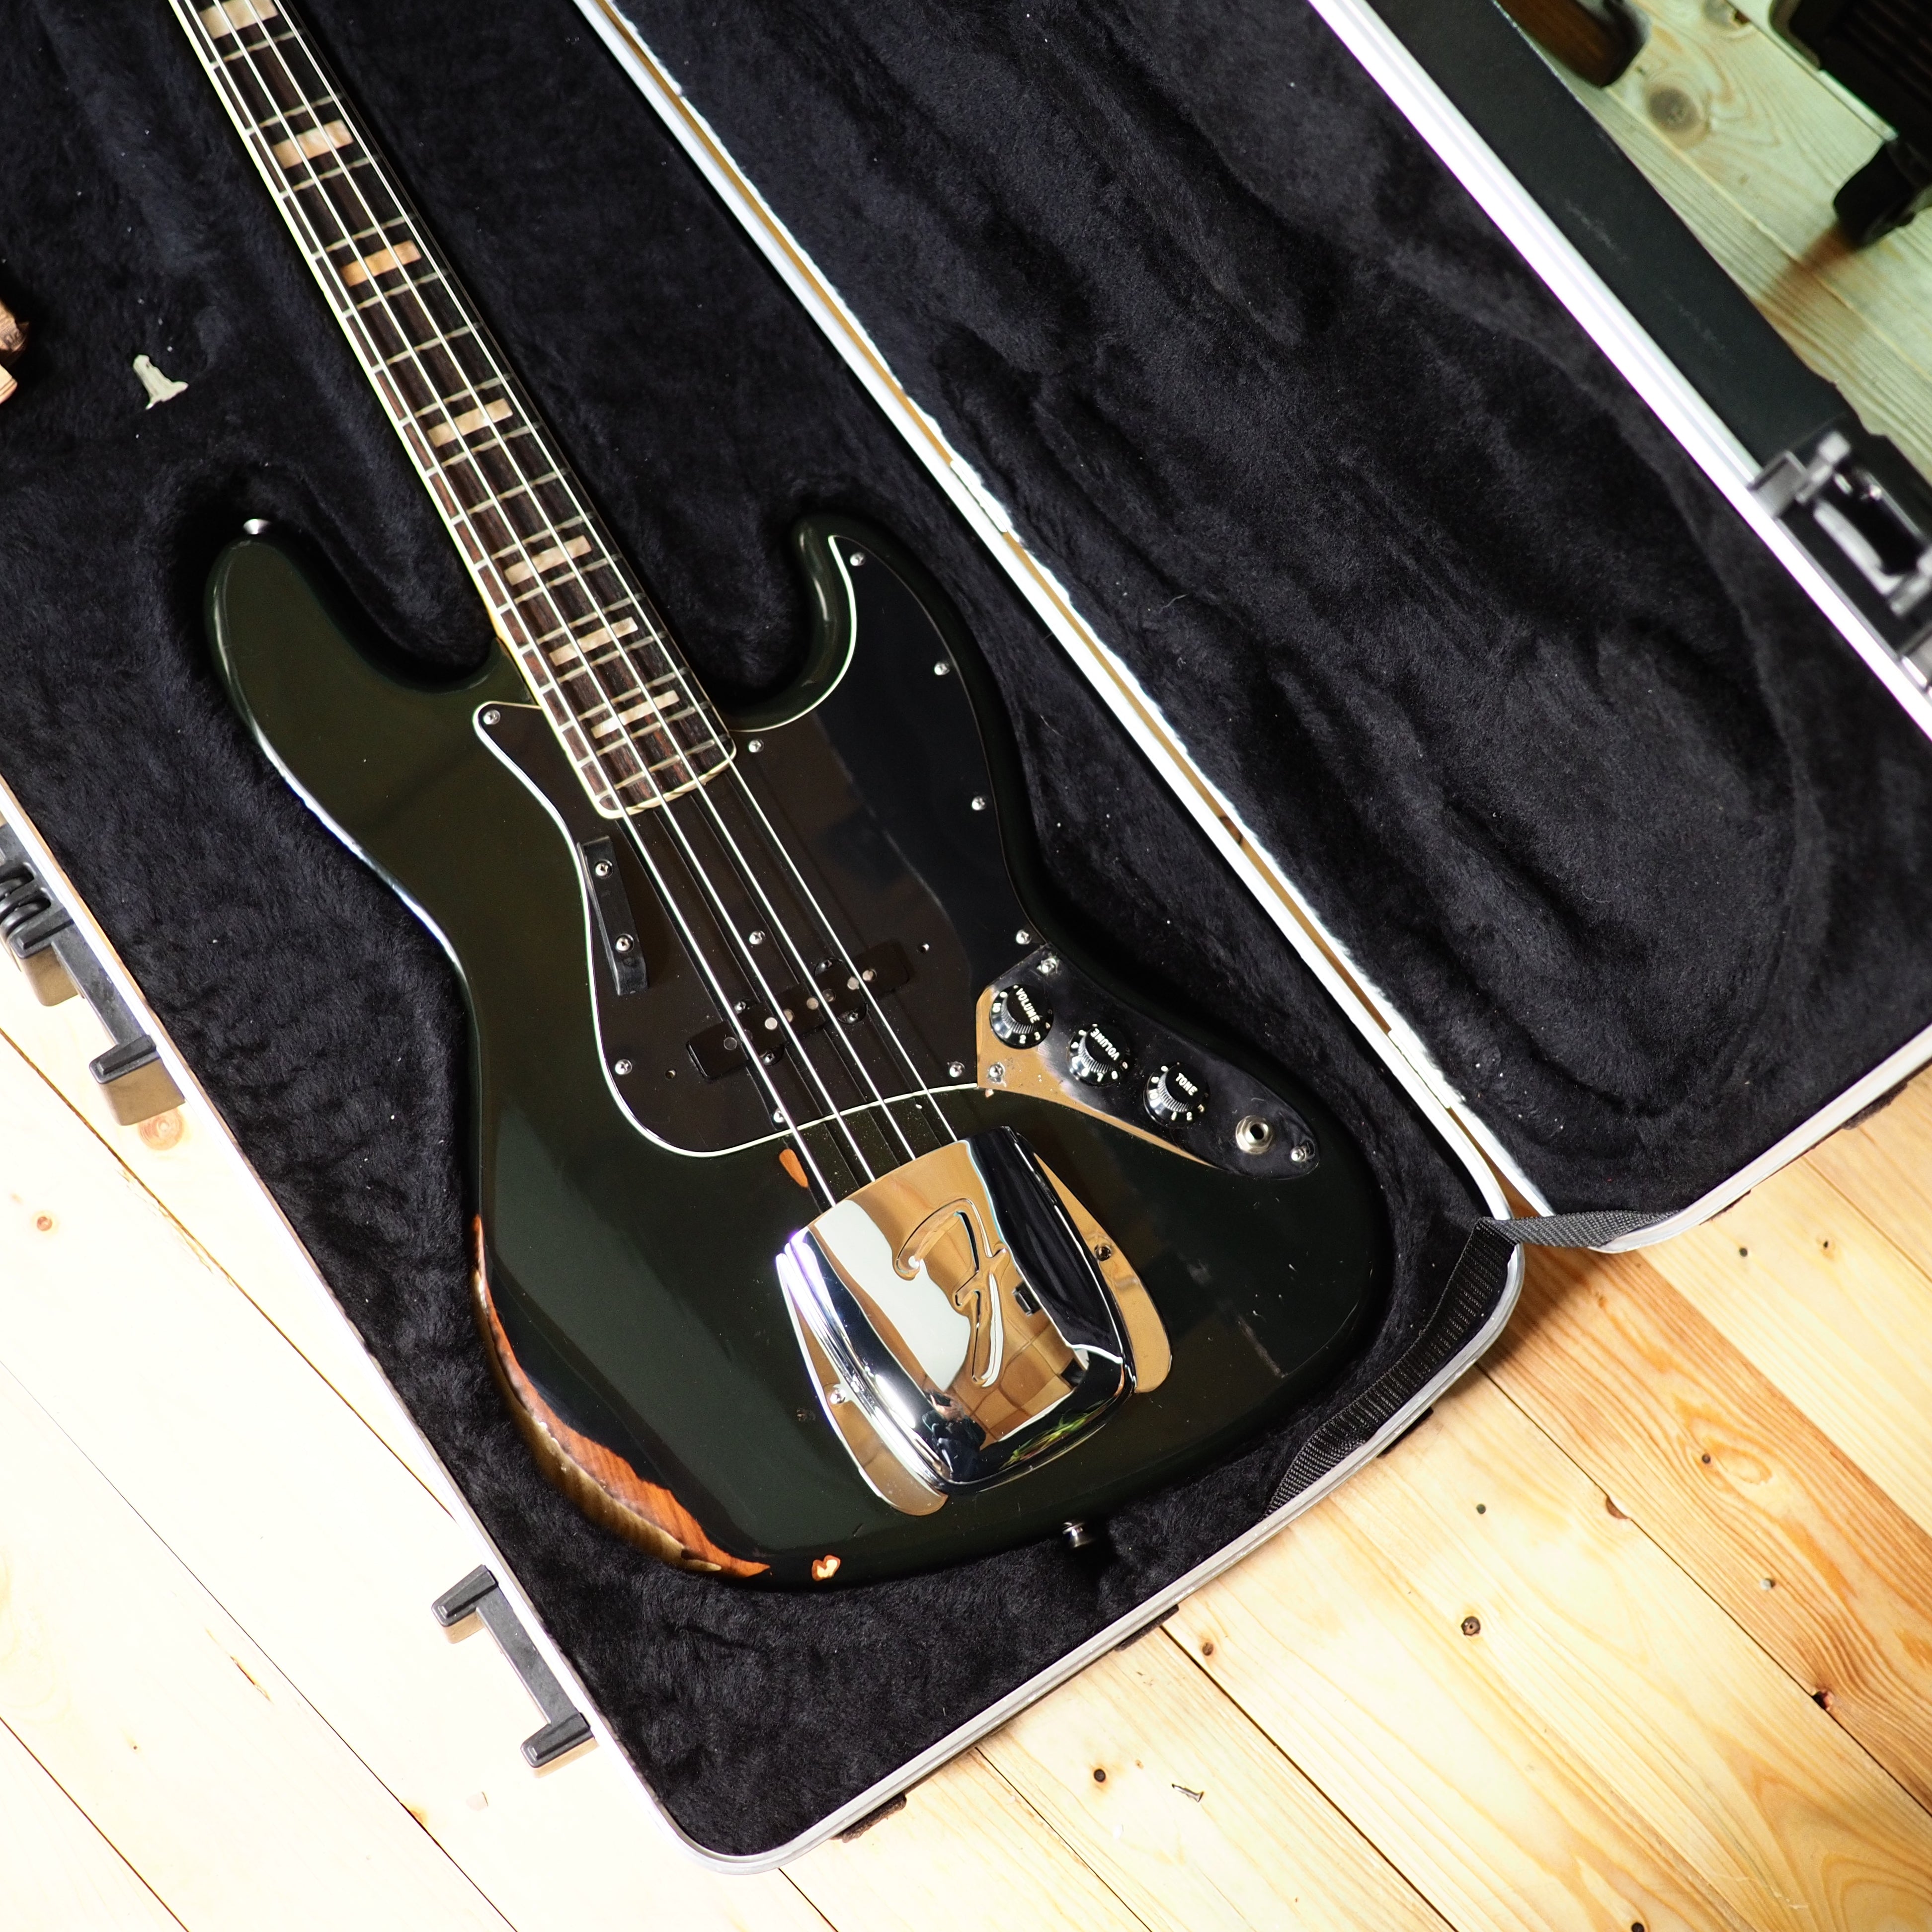 Fender Jazz Bass aus 1977-1978